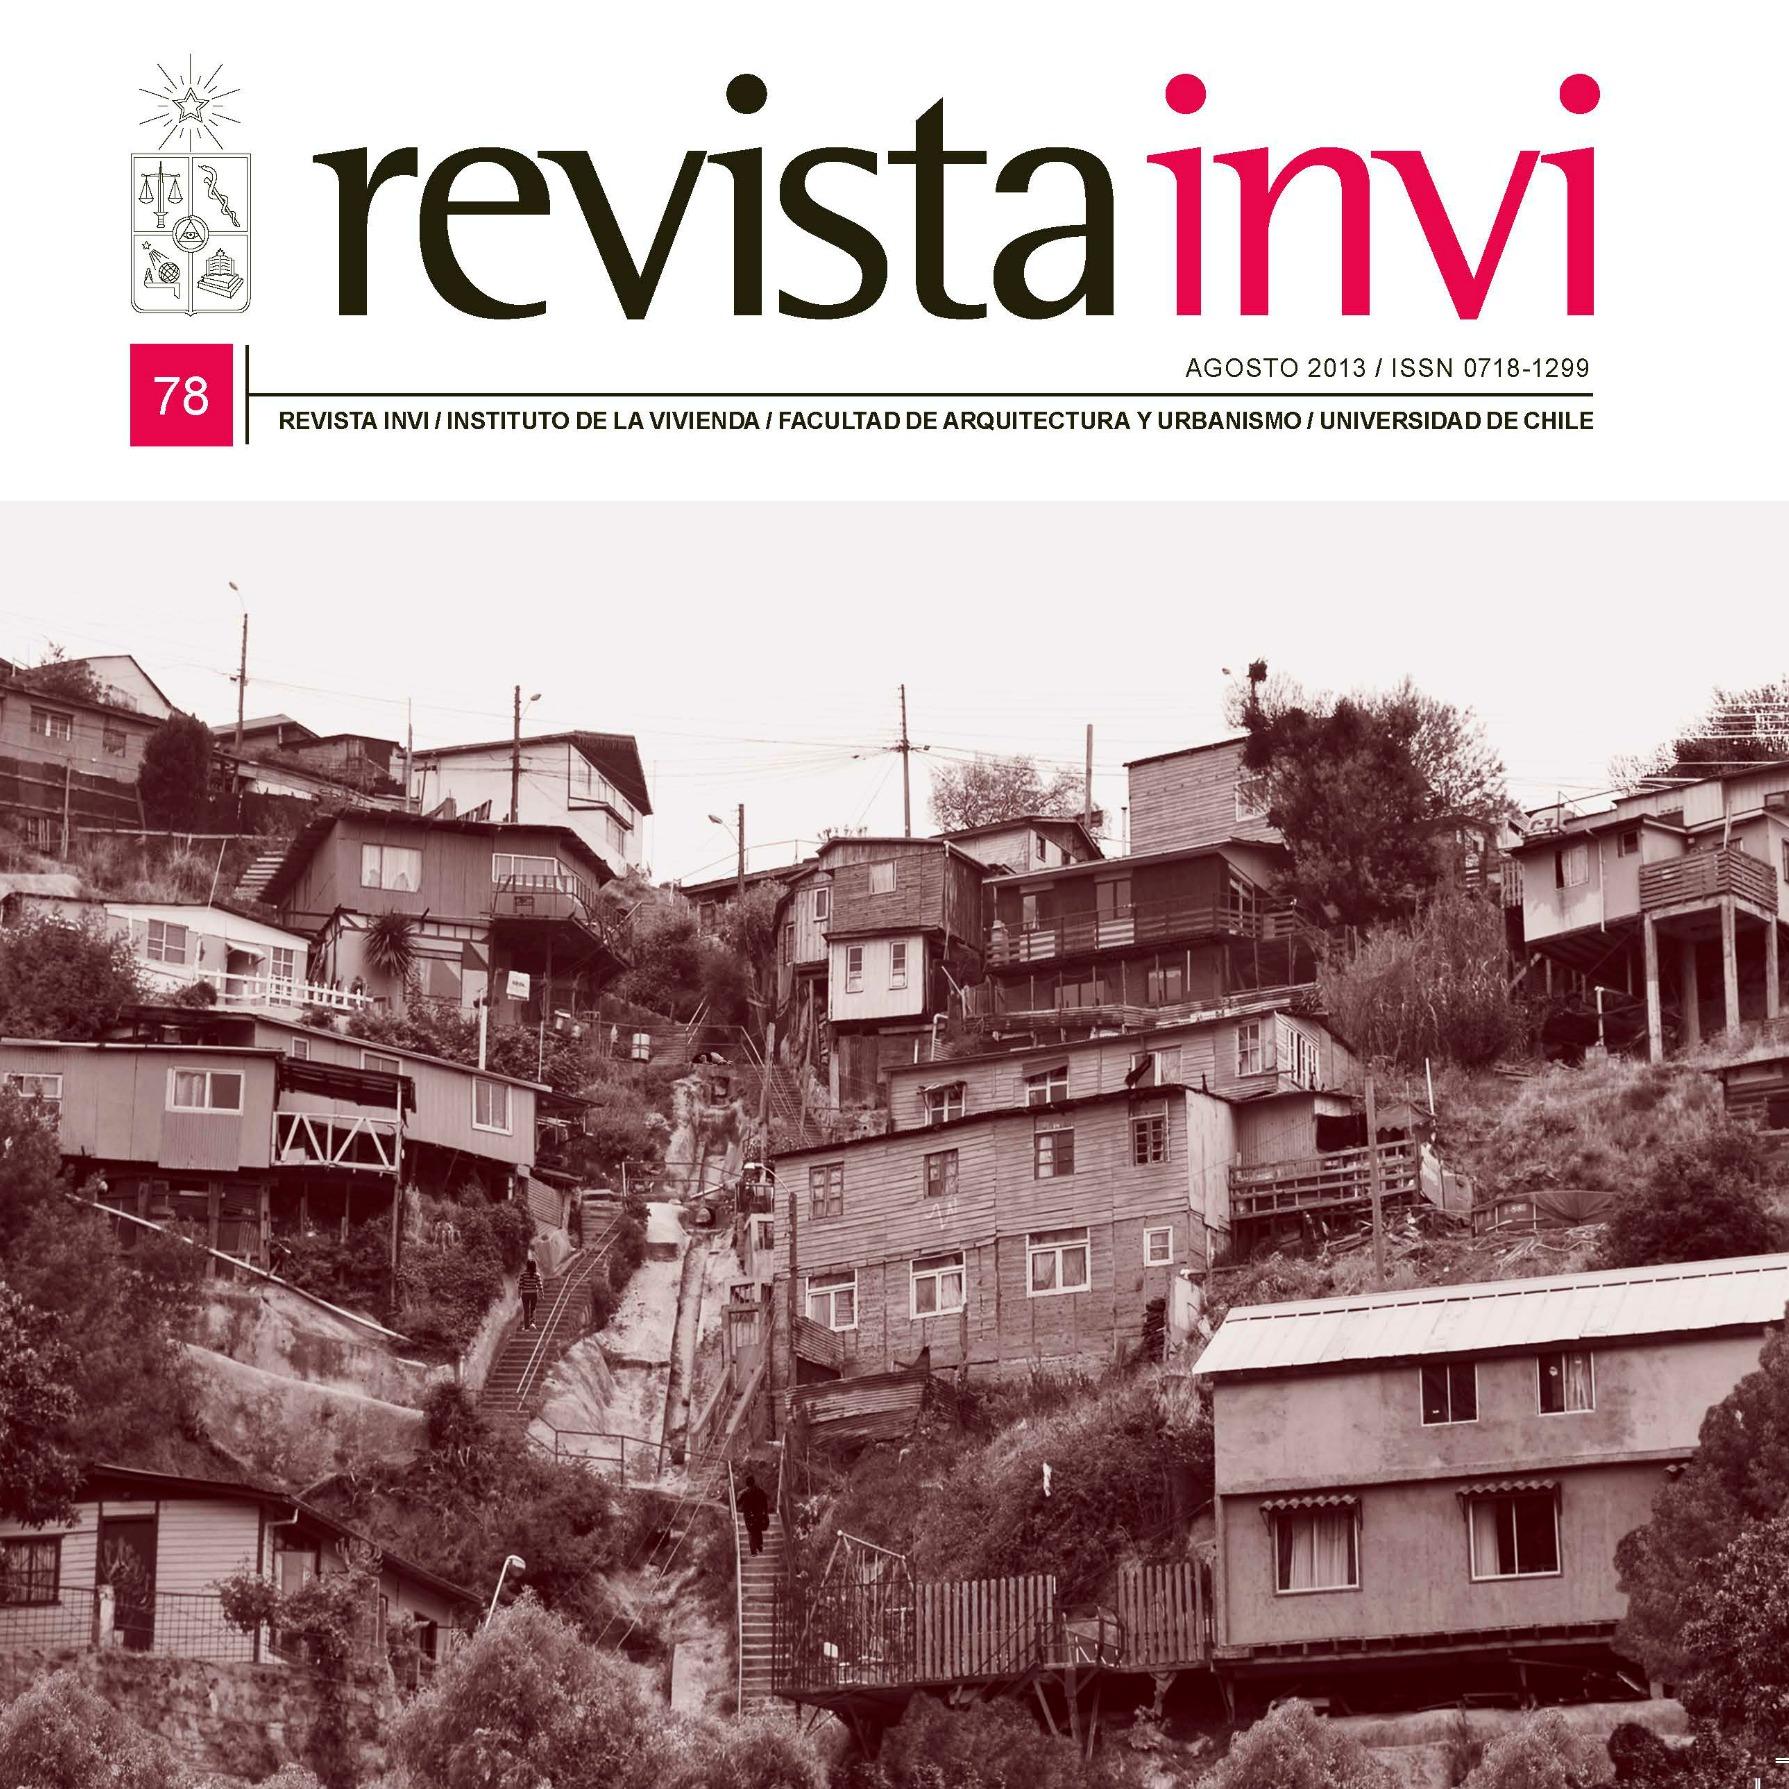 Este hito convierte a la Revista INVI en la publicación mejor posicionada de la Universidad de Chile en materia de estudios territoriales y urbanos.